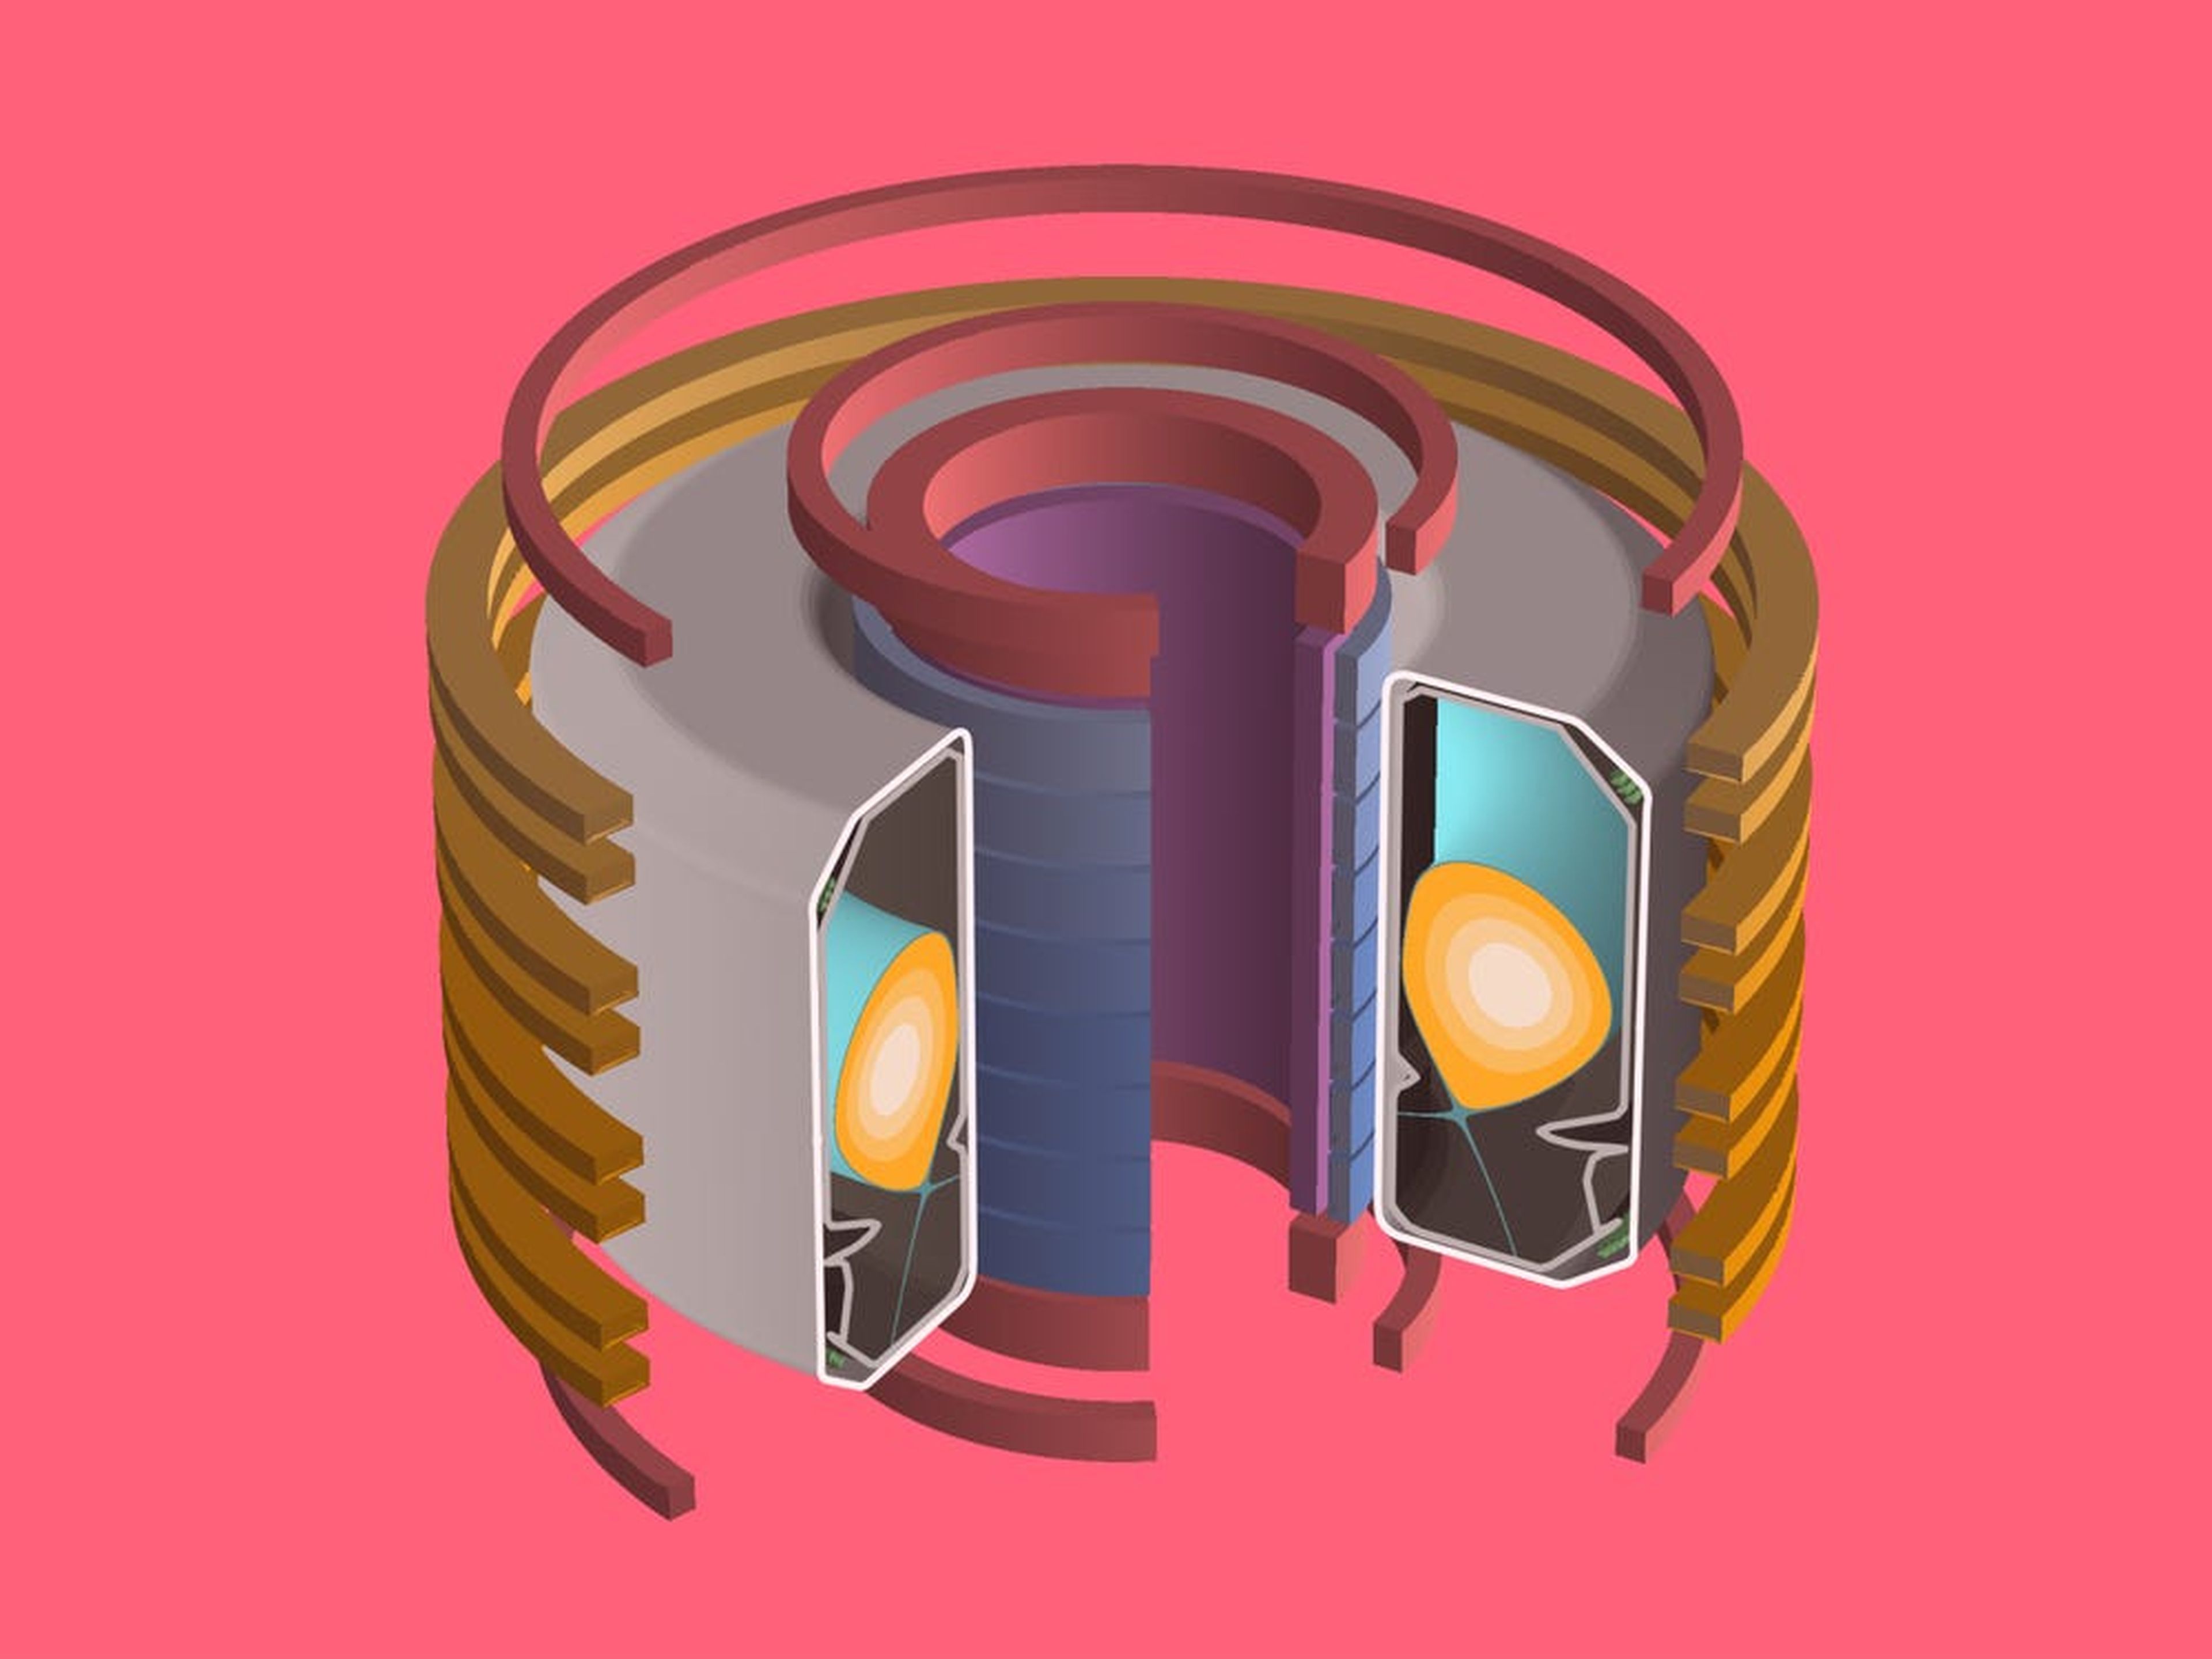 Modelo 3D del reactor tokamak usado en el experimento de DeepMind.